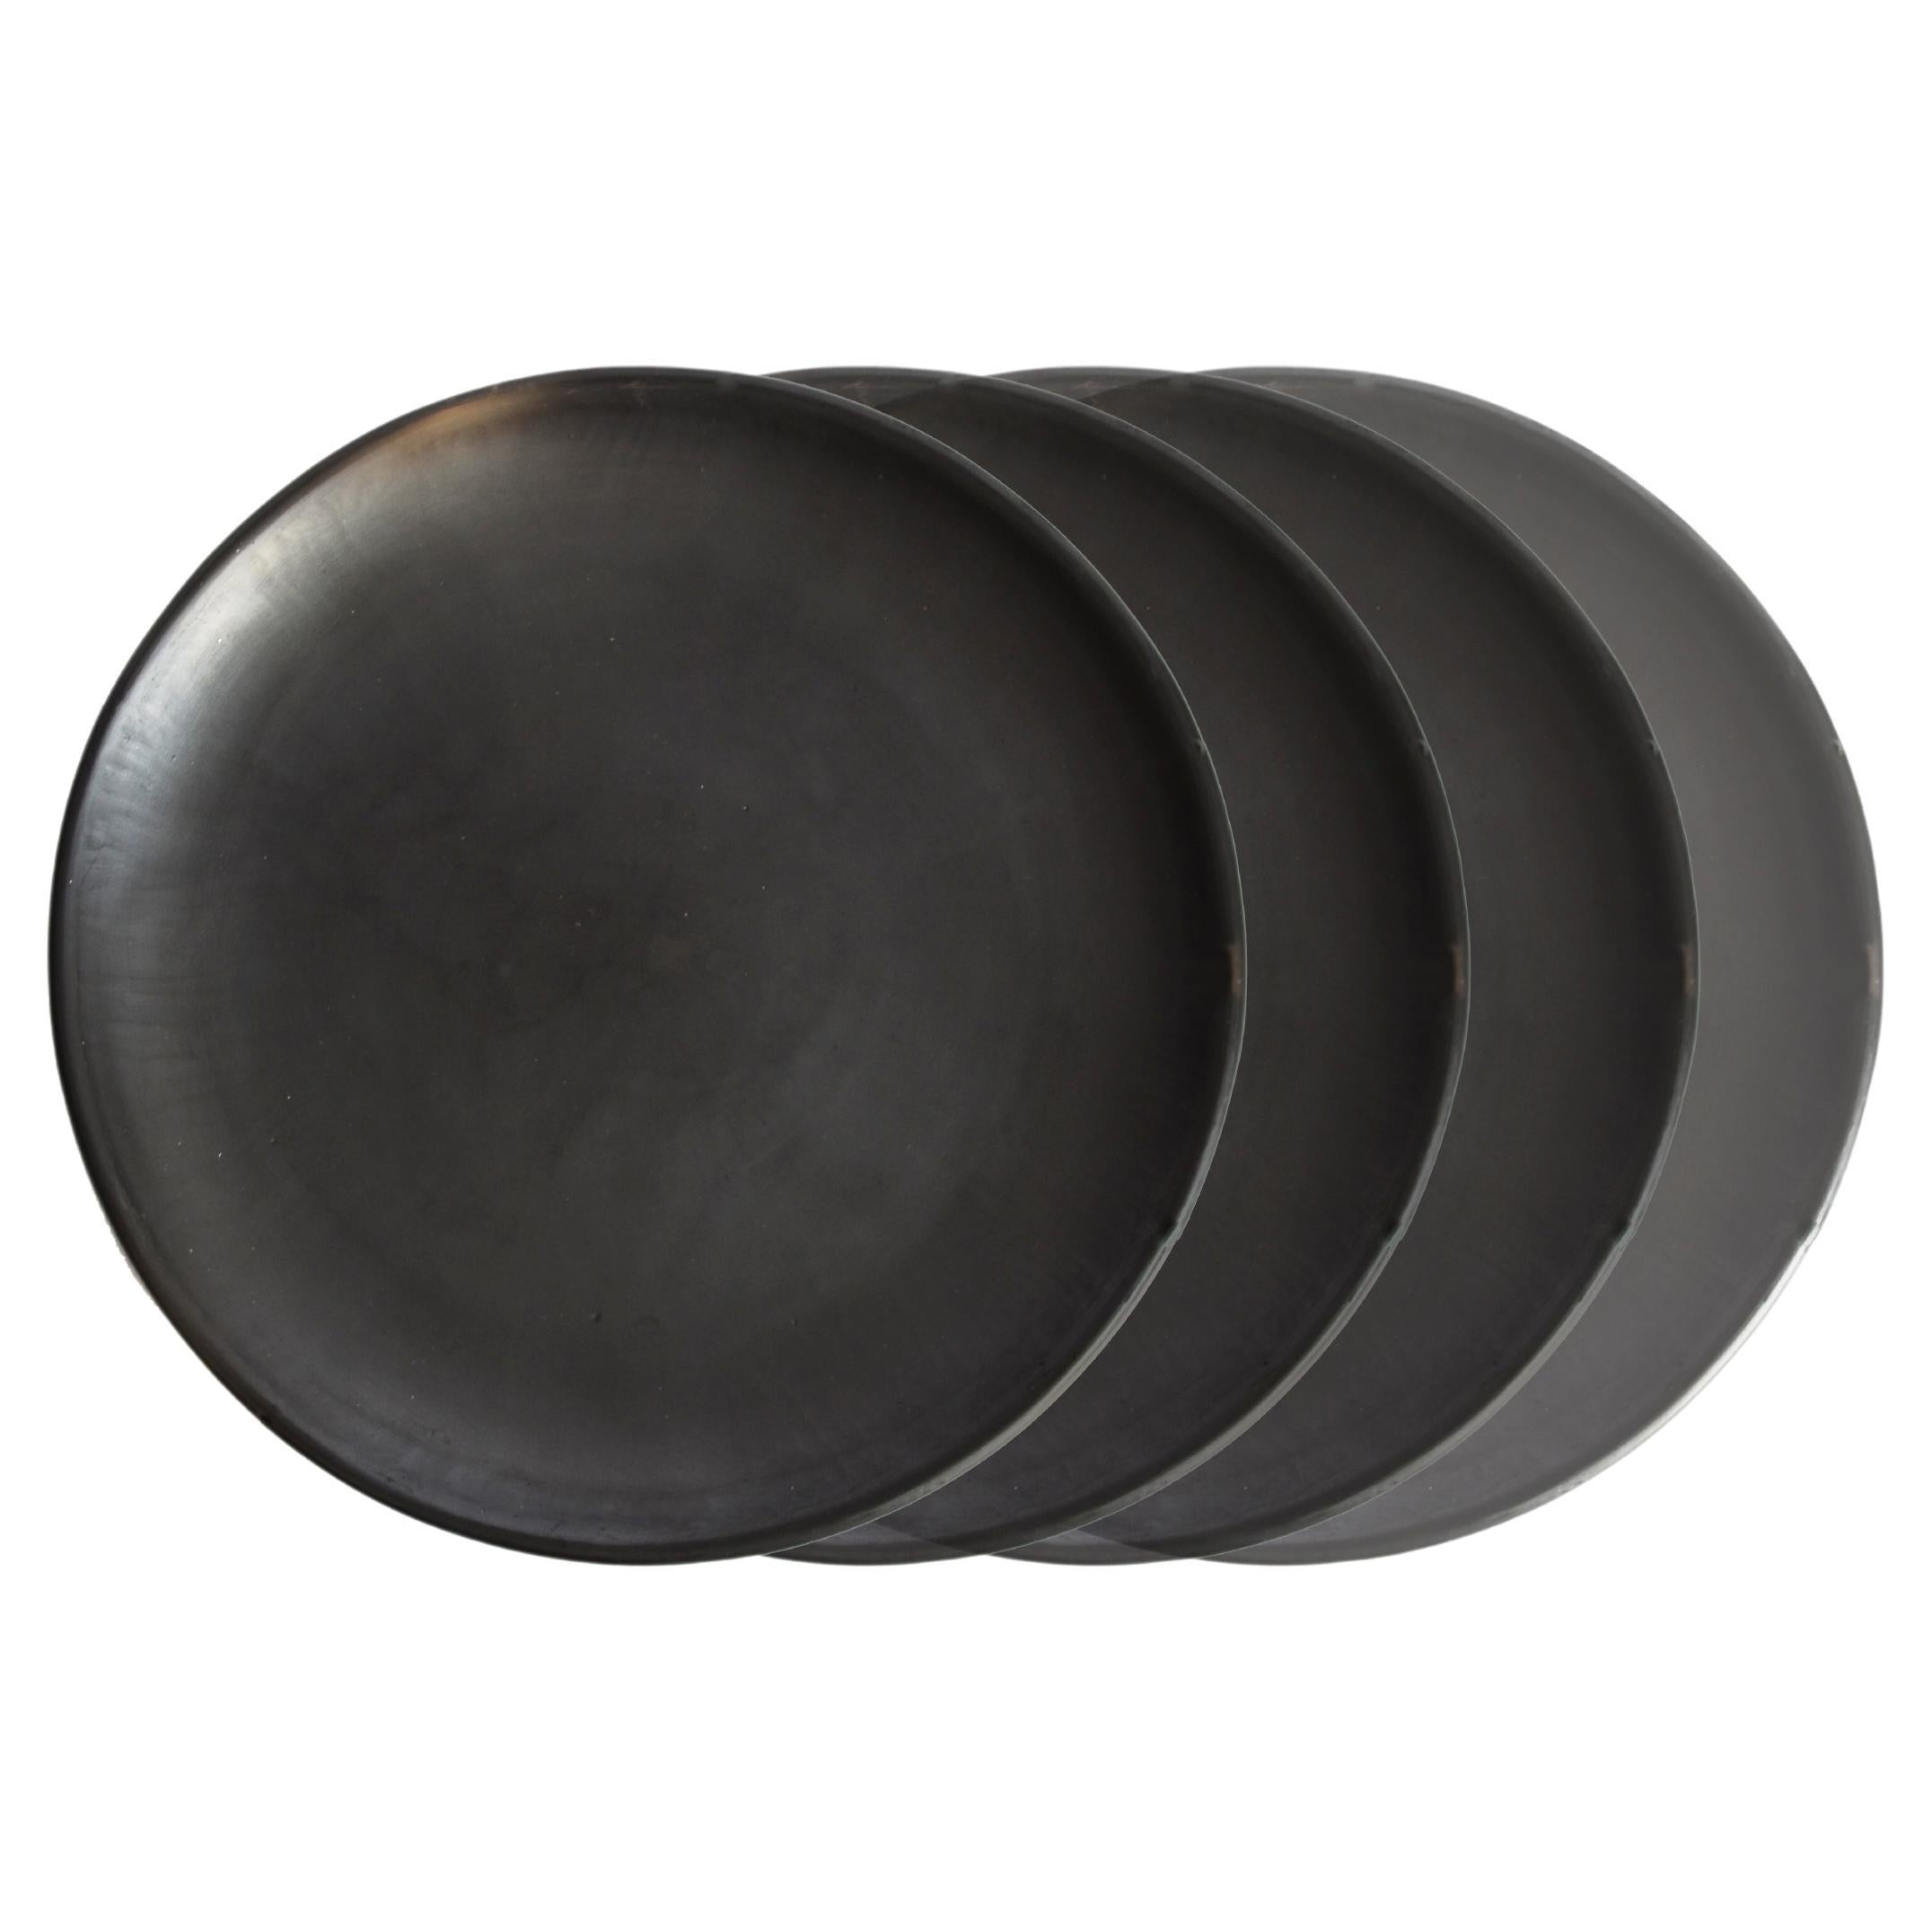 4 assiettes latérales 15 cm en argile noire d'Oaxacan, faites à la main, bruni Barro Oaxaca